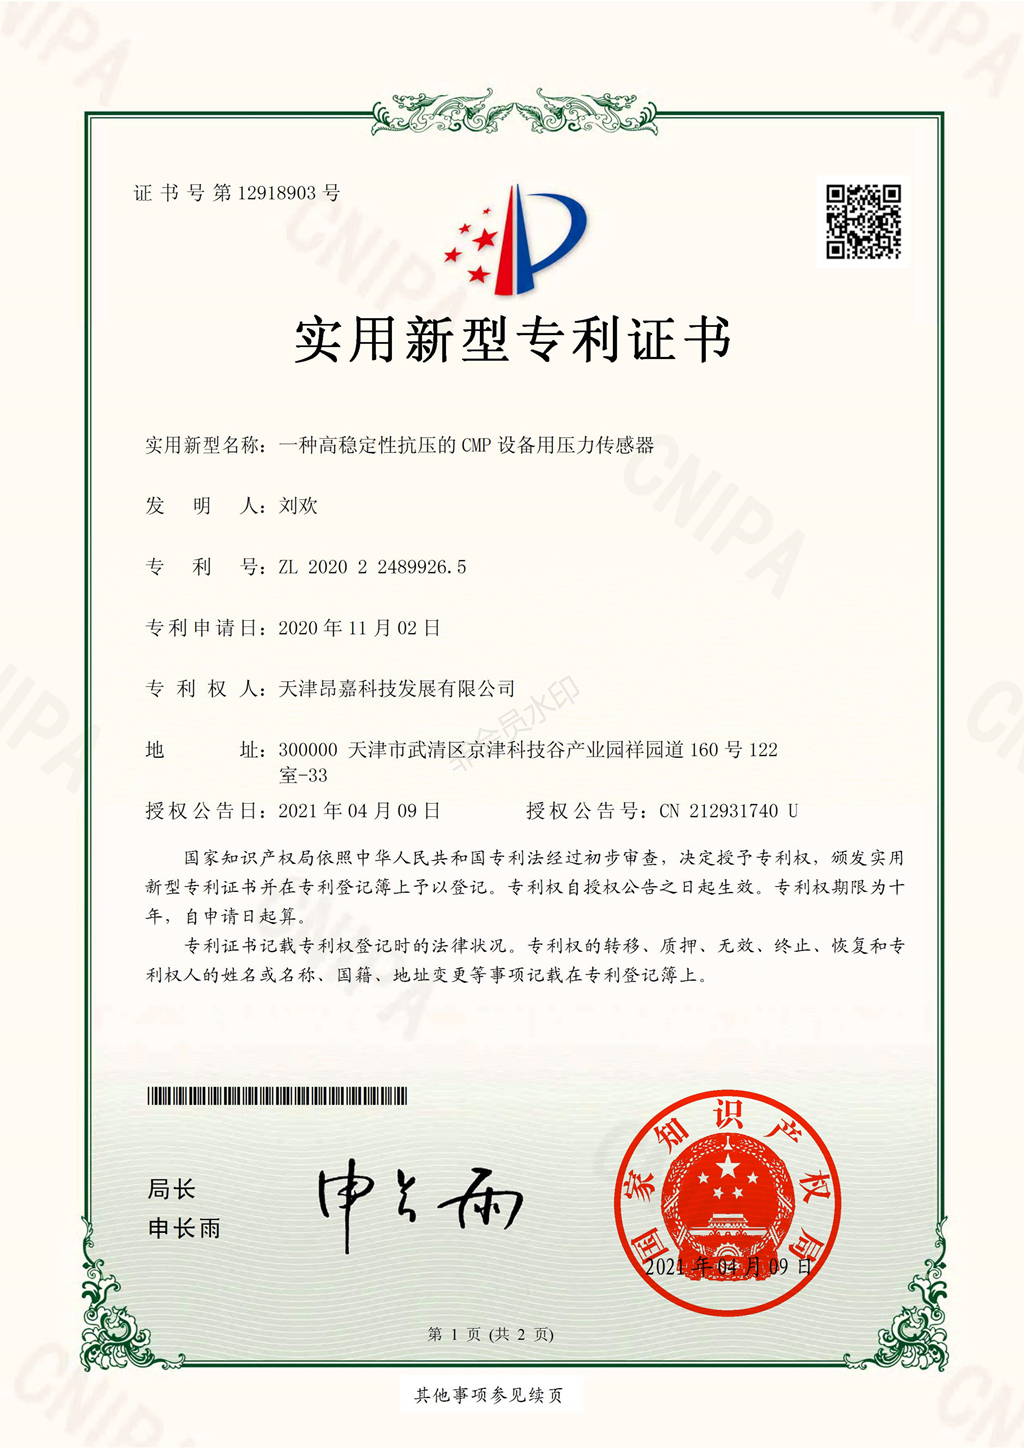 天津昂嘉科技獲得多項國(guó)家實用新型專利證書